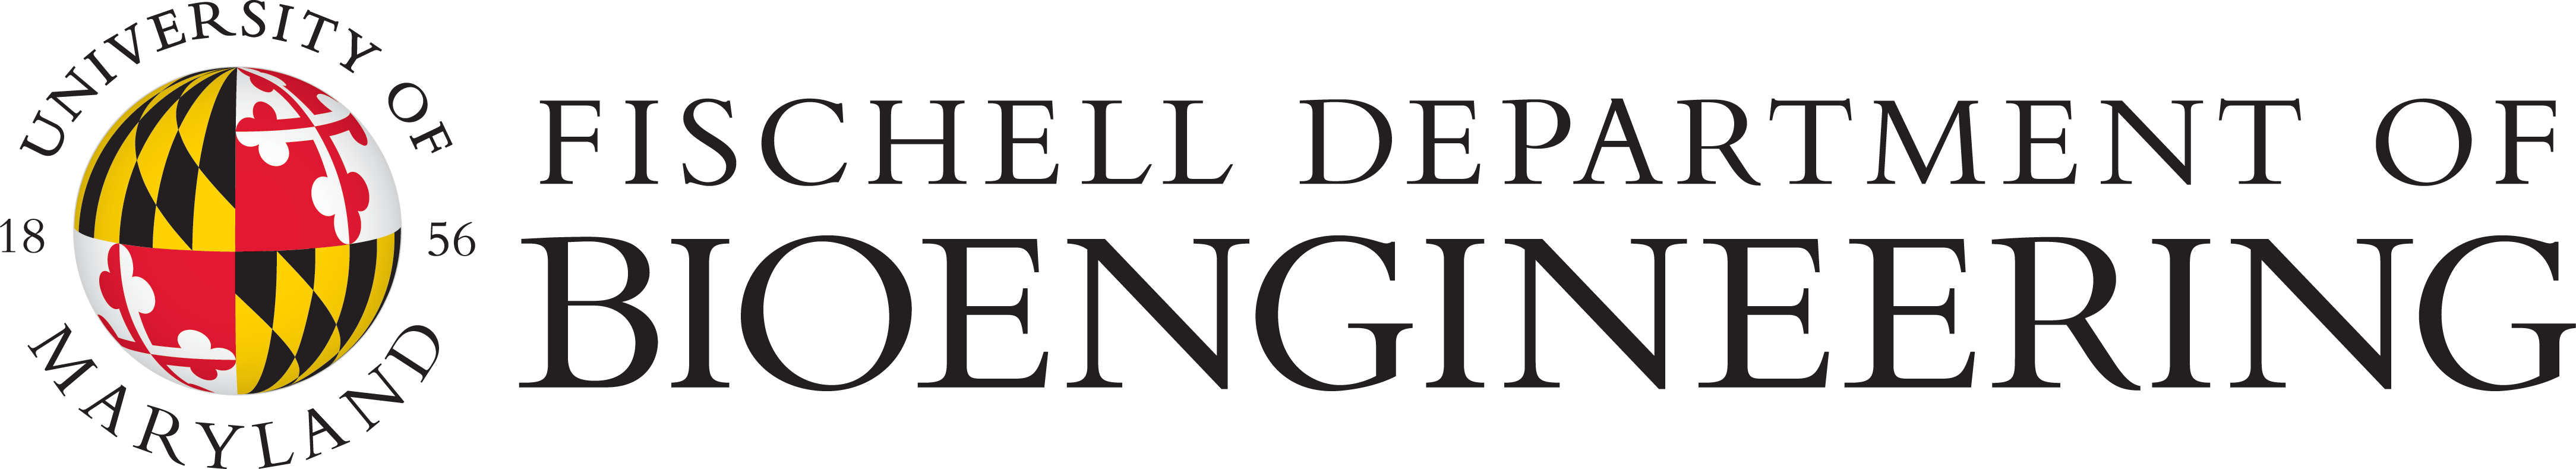 University of Maryland Fischell Department of Bioengineering logo